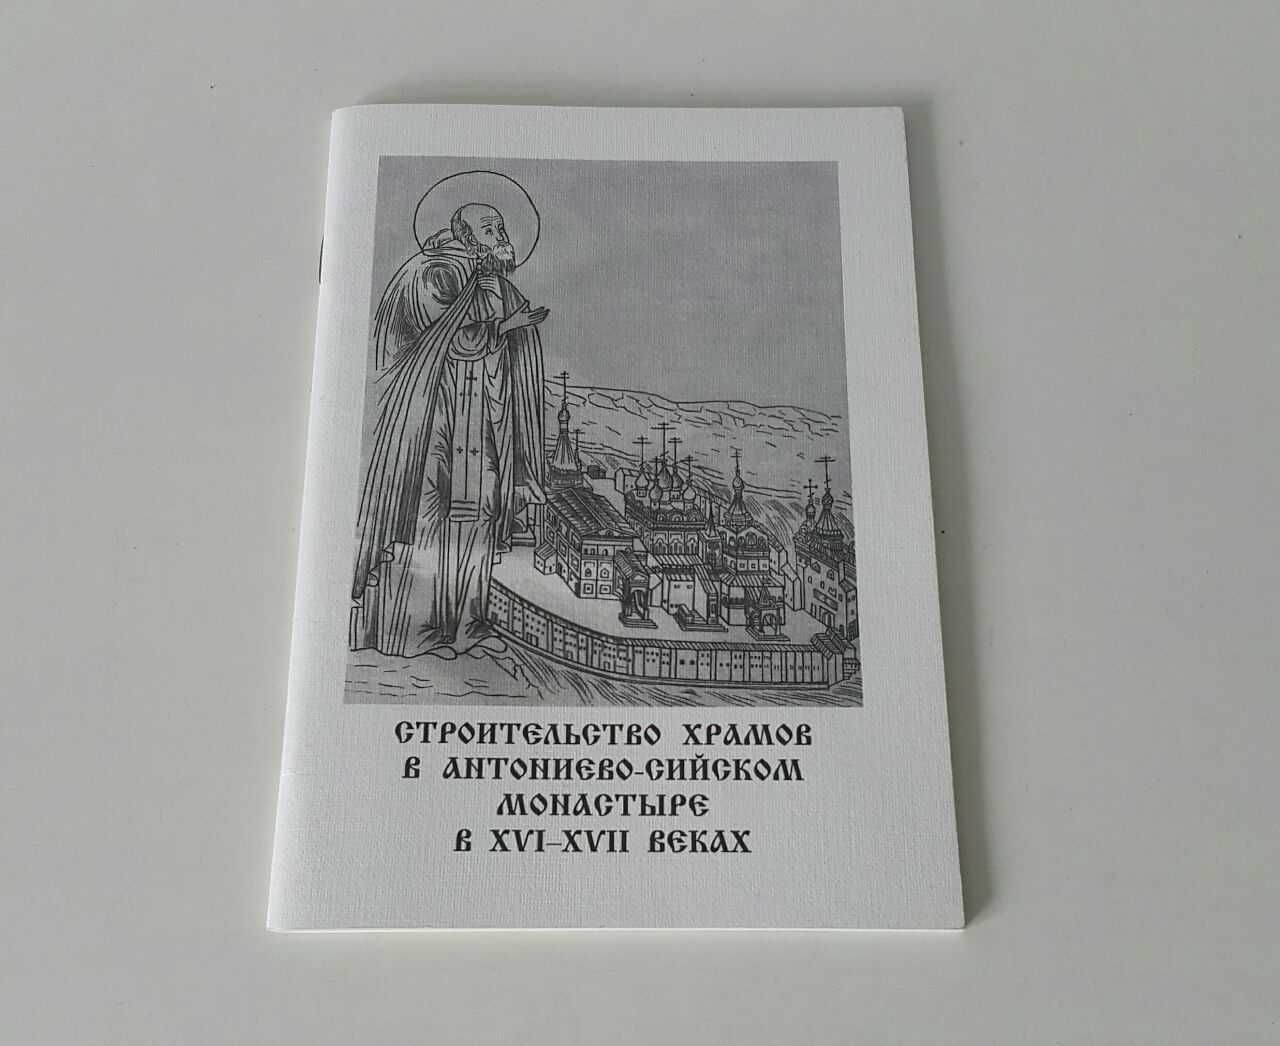 Церковные книги Путеводители по монастырям Храм Лавра Скит